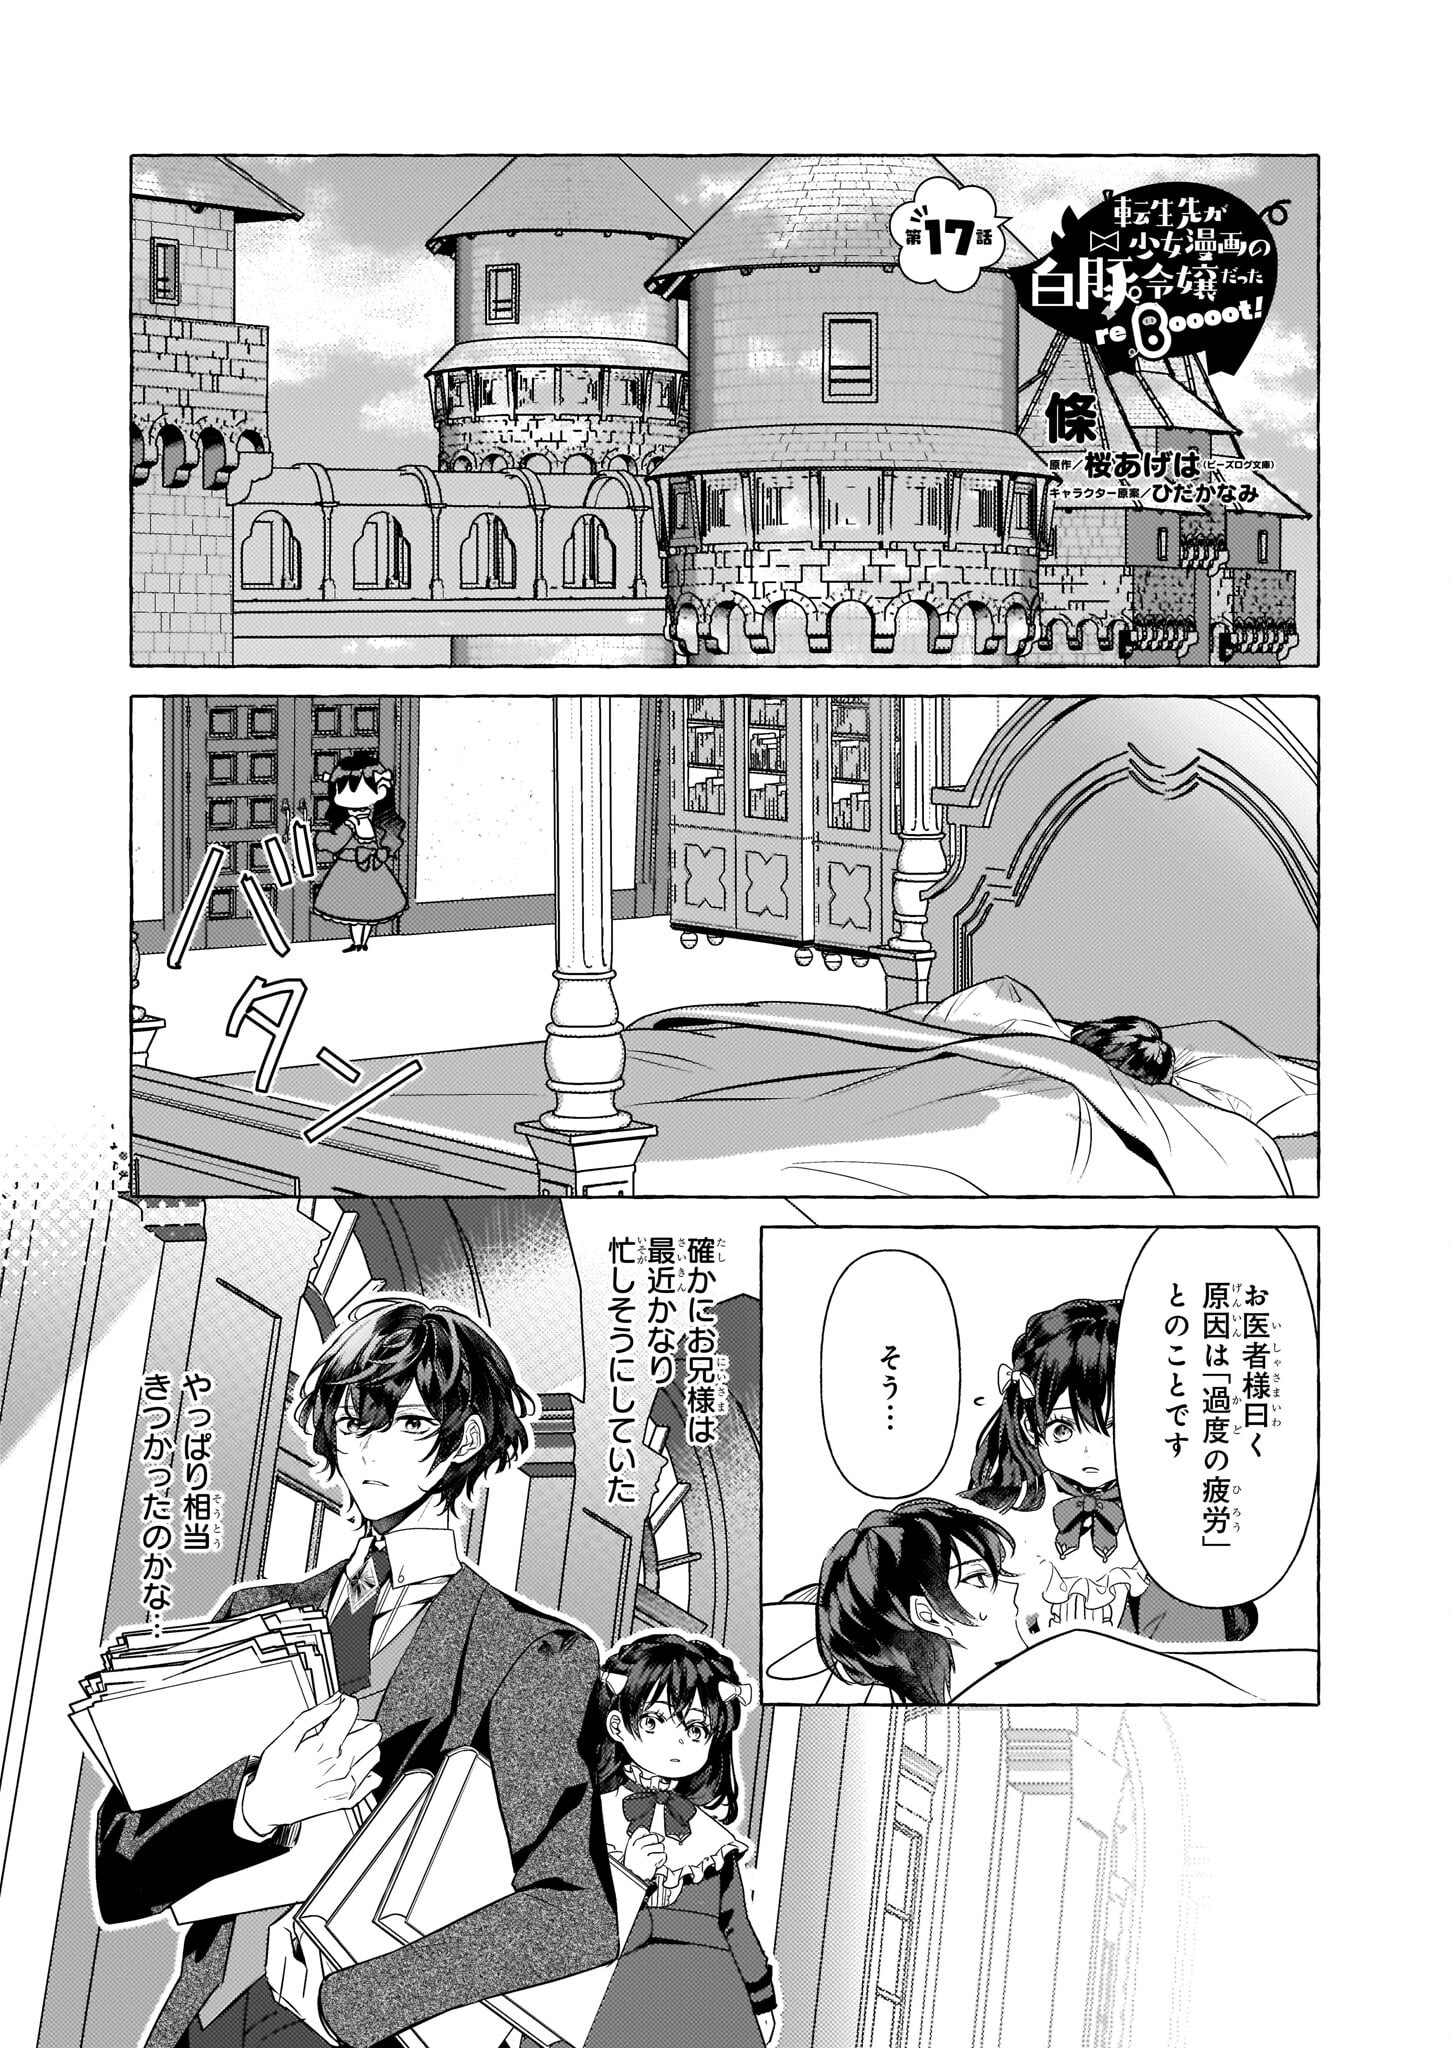 Tenseisaki ga Shoujo Manga no Shirobuta Reijou datta reBoooot! - Chapter 17 - Page 1